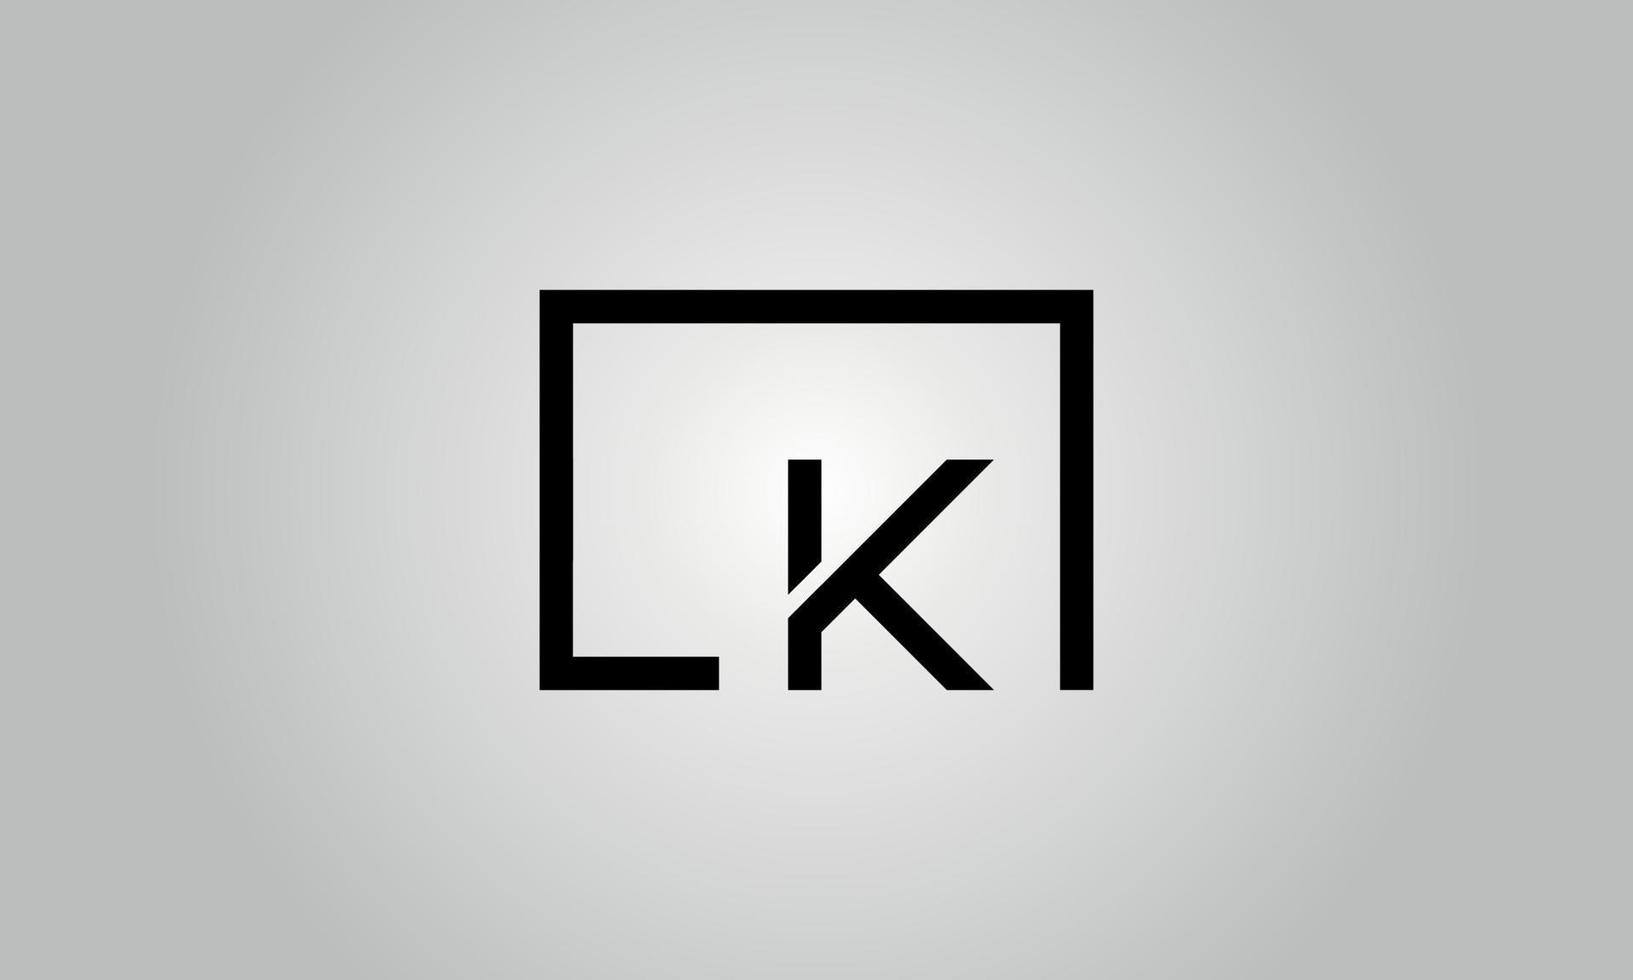 création de logo lettre lk. logo lk avec forme carrée dans le modèle vectoriel gratuit de couleurs noires.